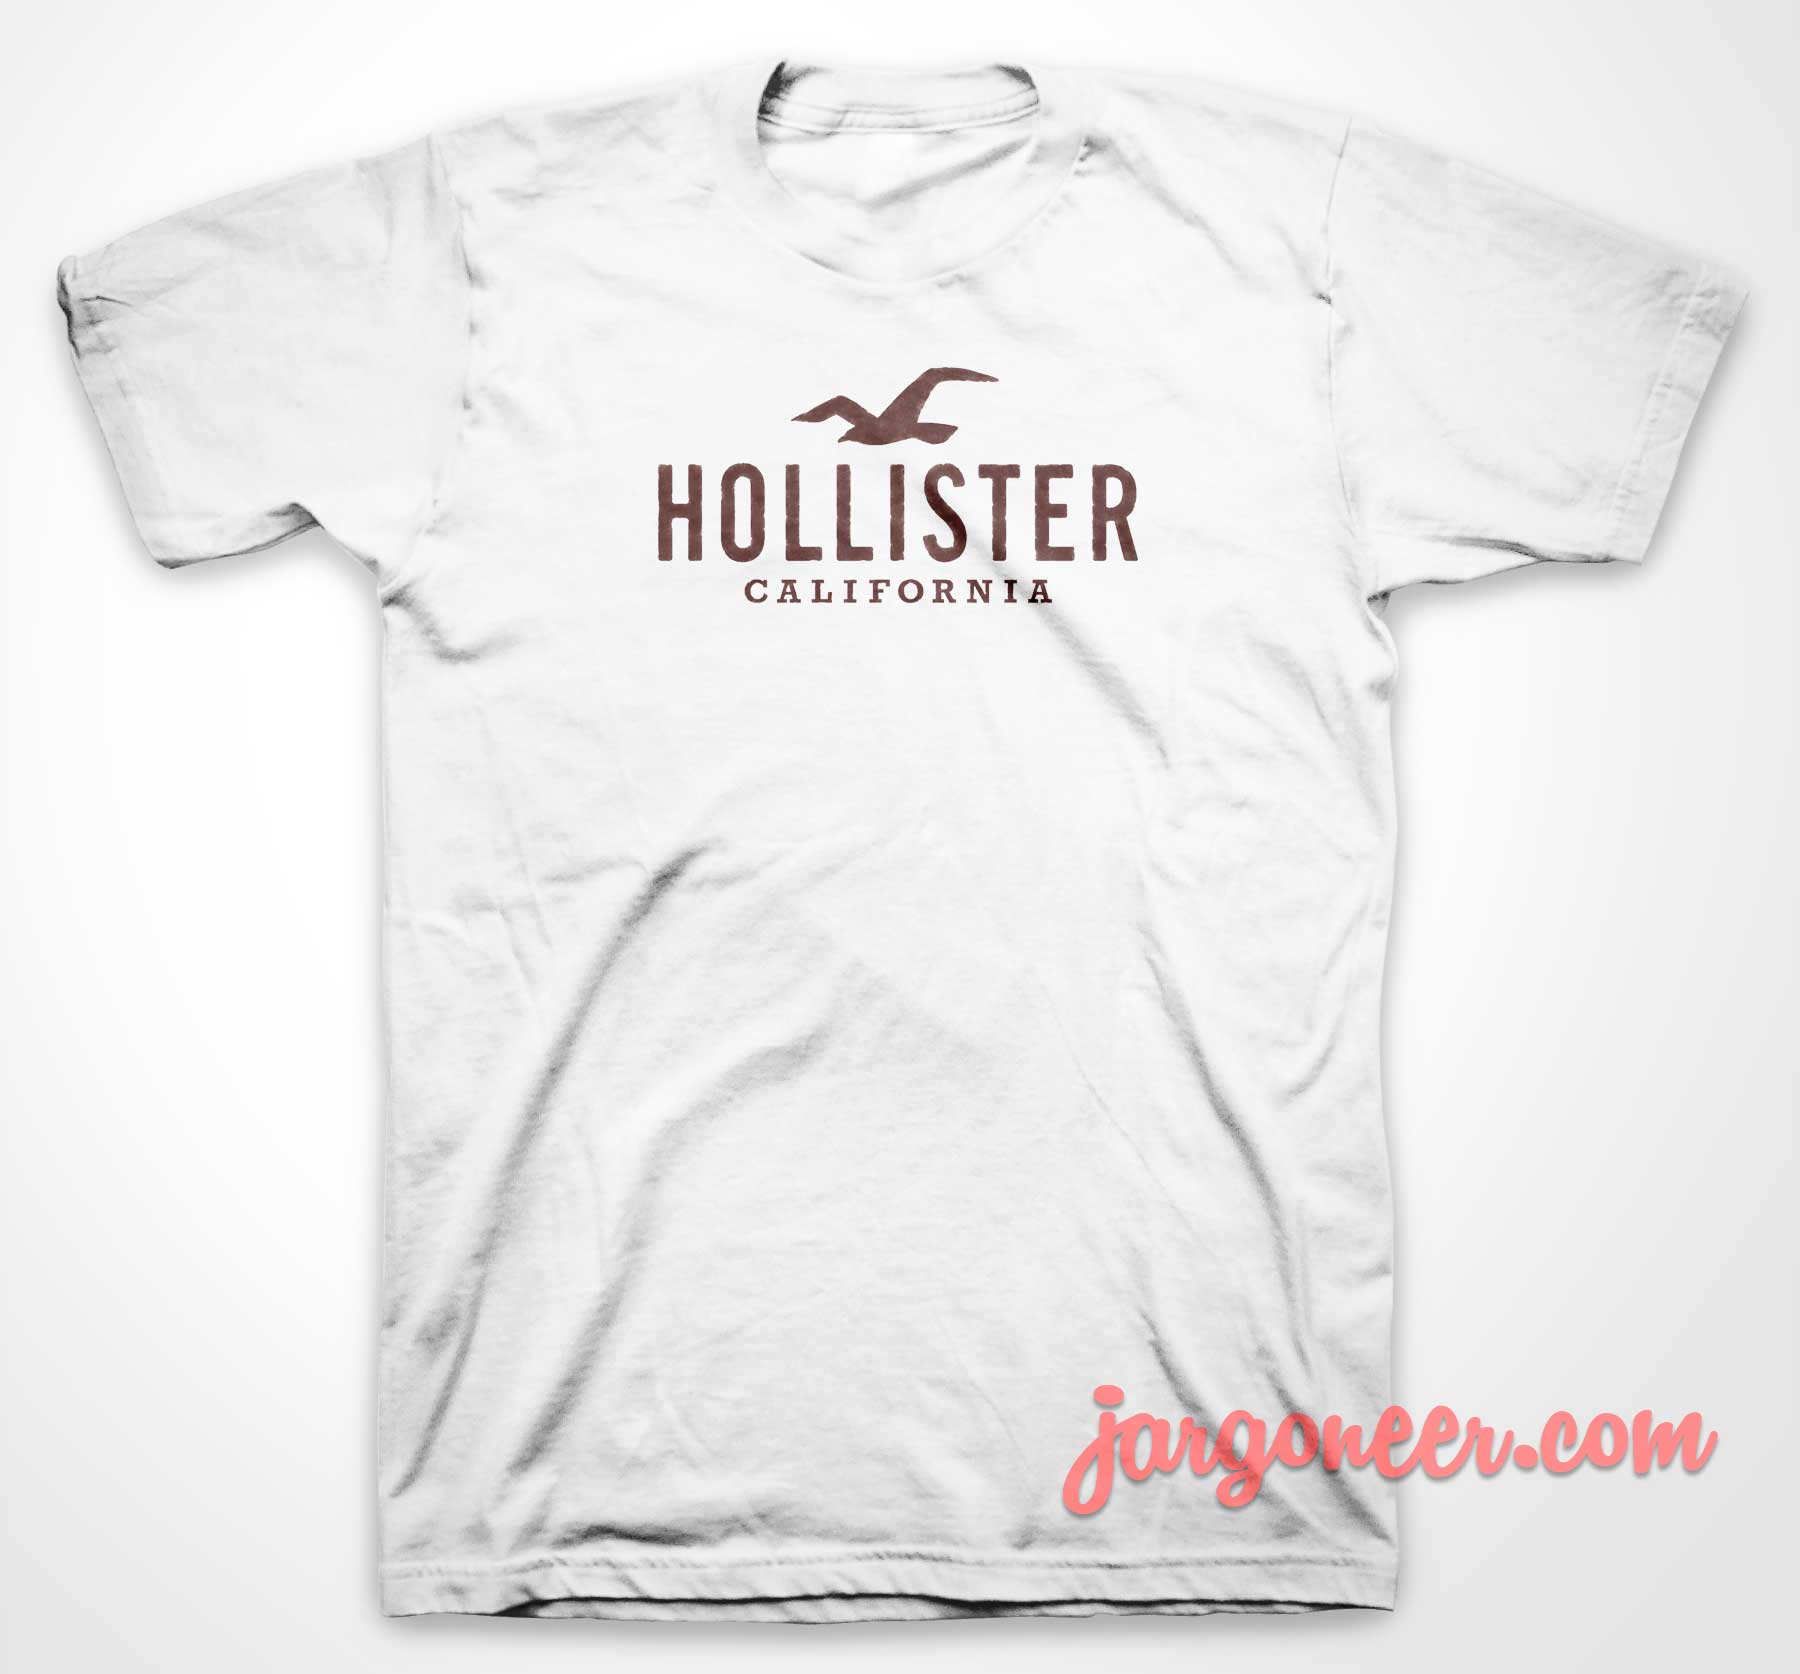 hollister shirts women's